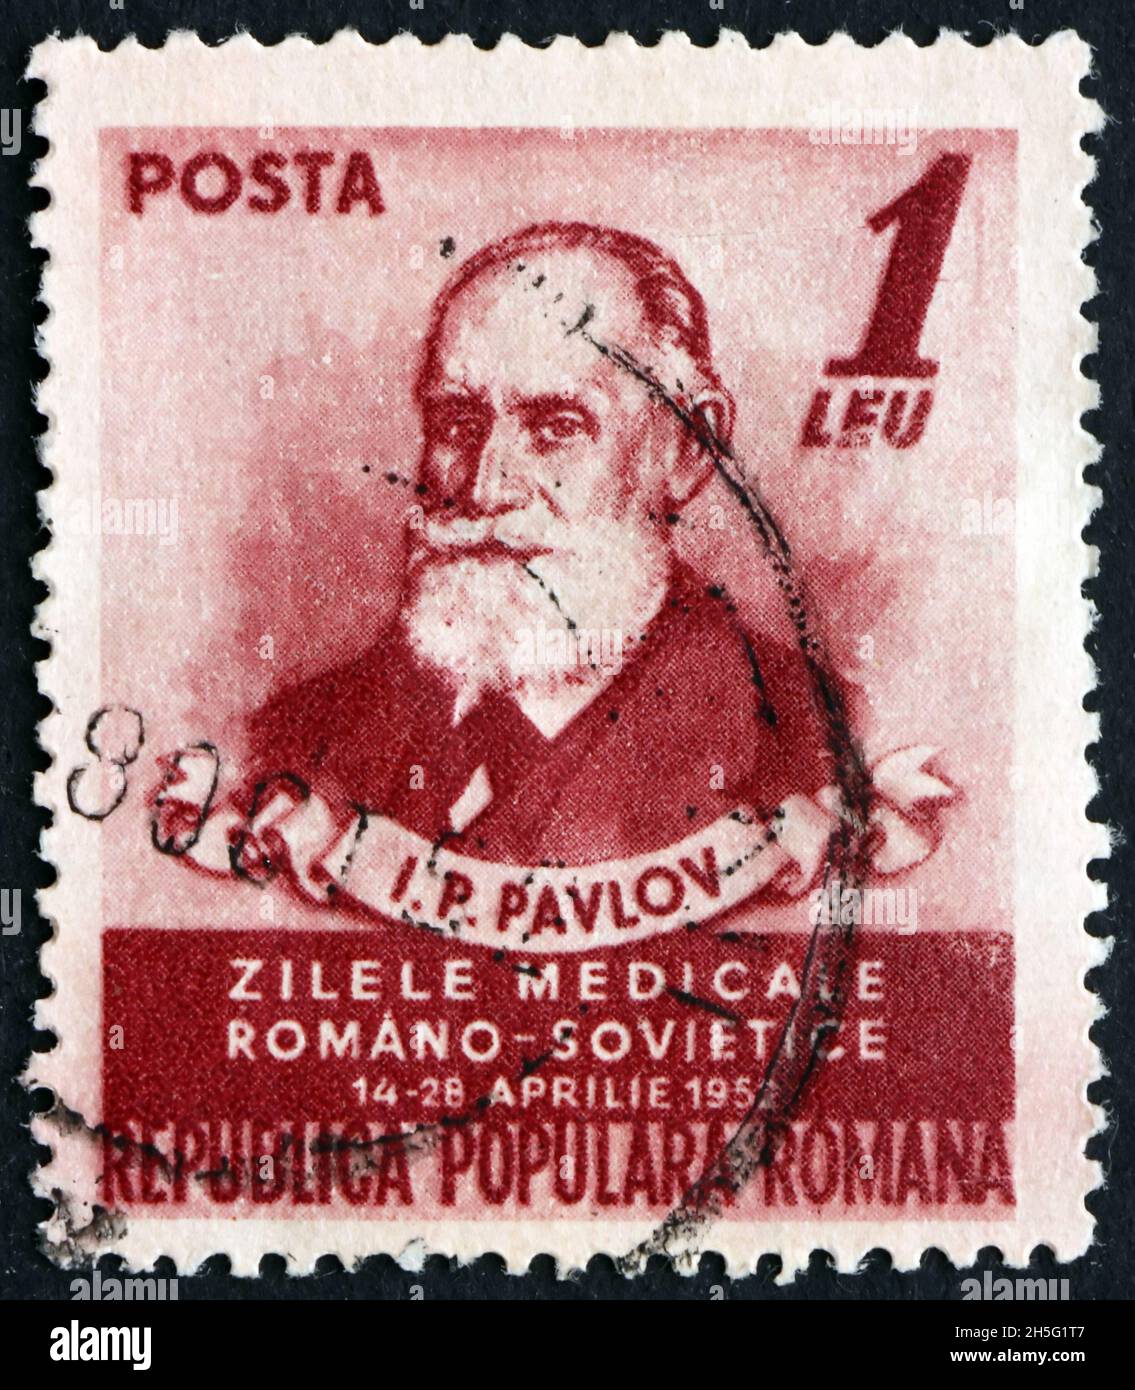 RUMÄNIEN - UM 1952: Eine in Rumänien gedruckte Briefmarke zeigt Ivan Petrovich Pavlov, den russischen Physiologen, der vor allem für seine Arbeit in klassischem Zustand bekannt ist Stockfoto